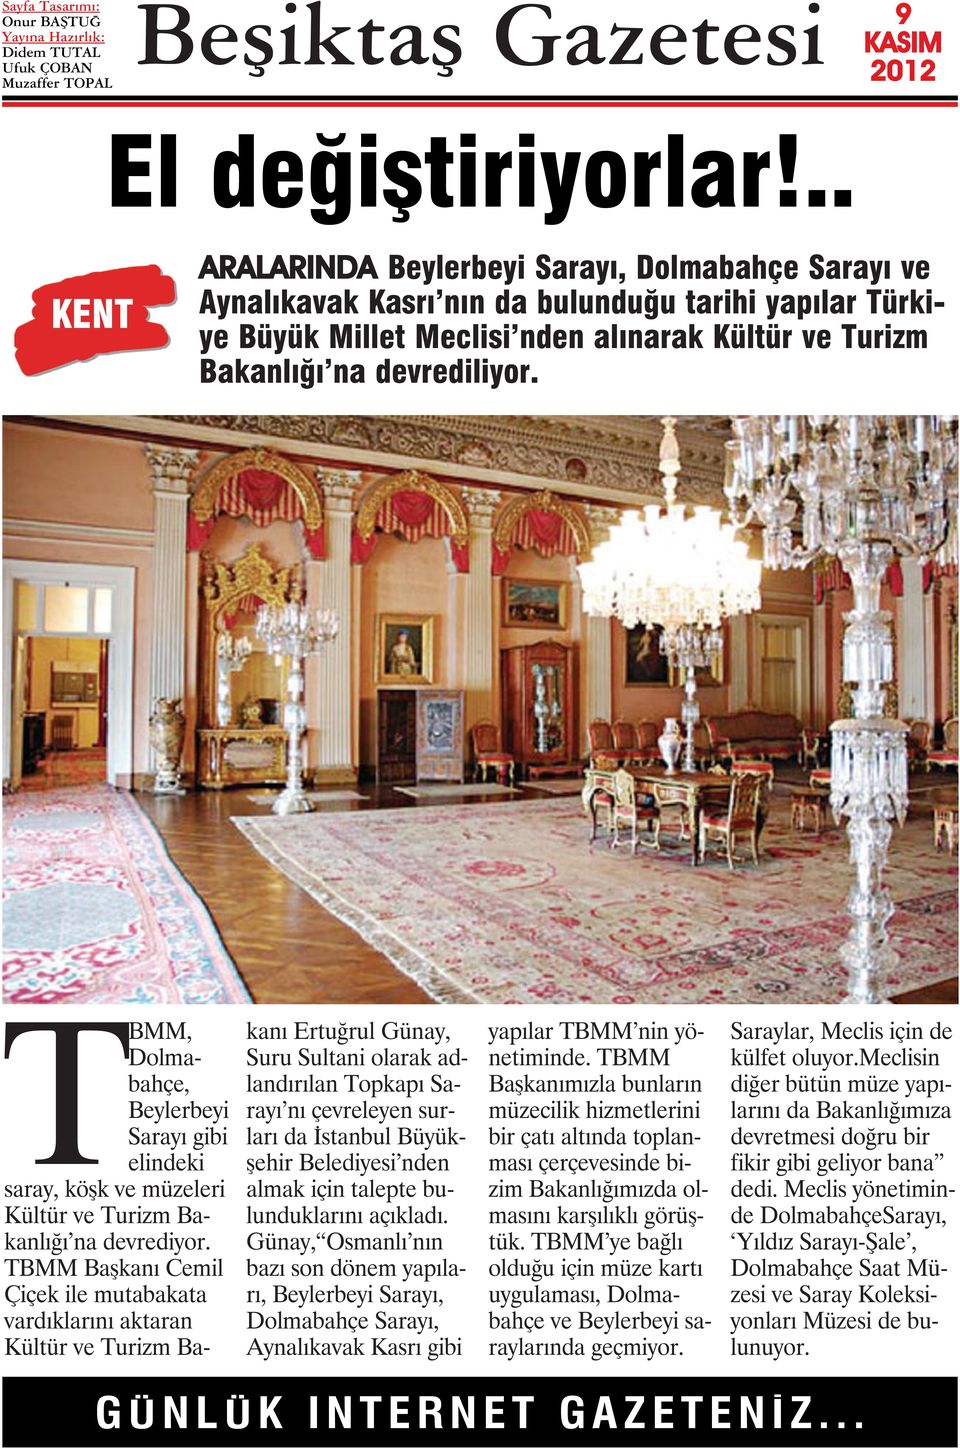 TBMM, Dolmabahçe, Beylerbeyi Sarayı gibi elindeki saray, köşk ve müzeleri Kültür ve Turizm Bakanlığı na devrediyor.